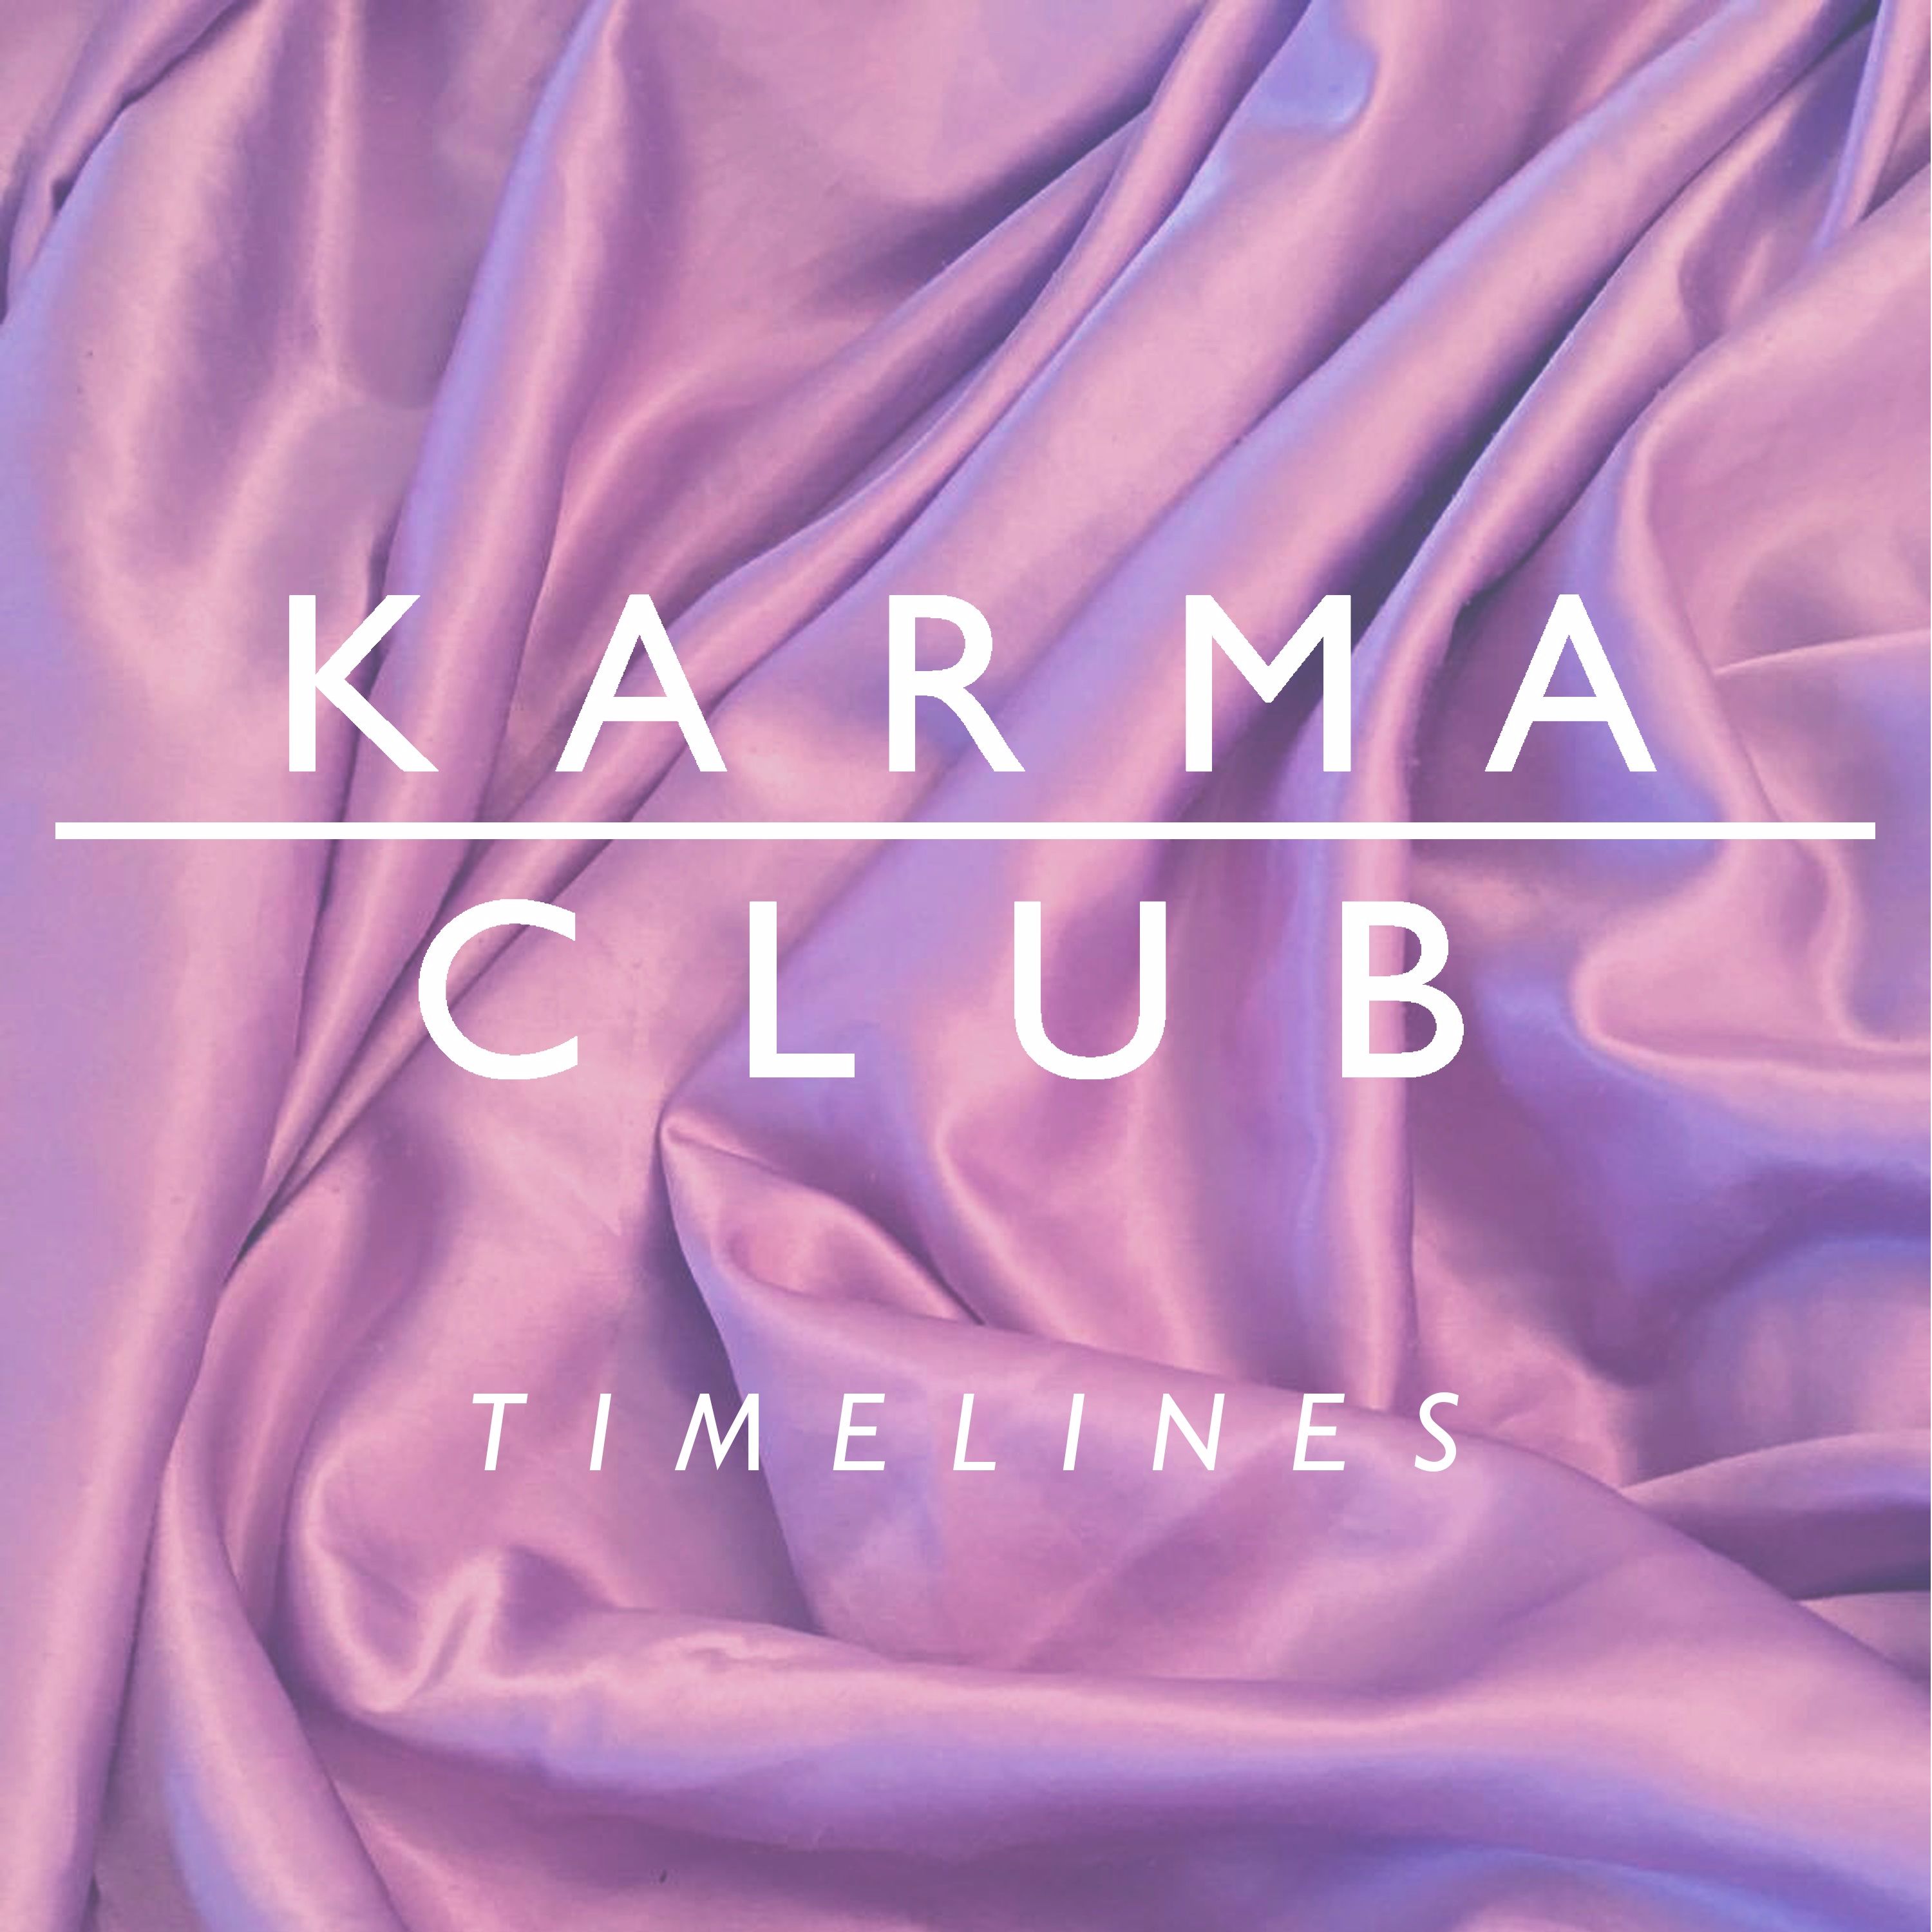 Karma Club – “Timelines”